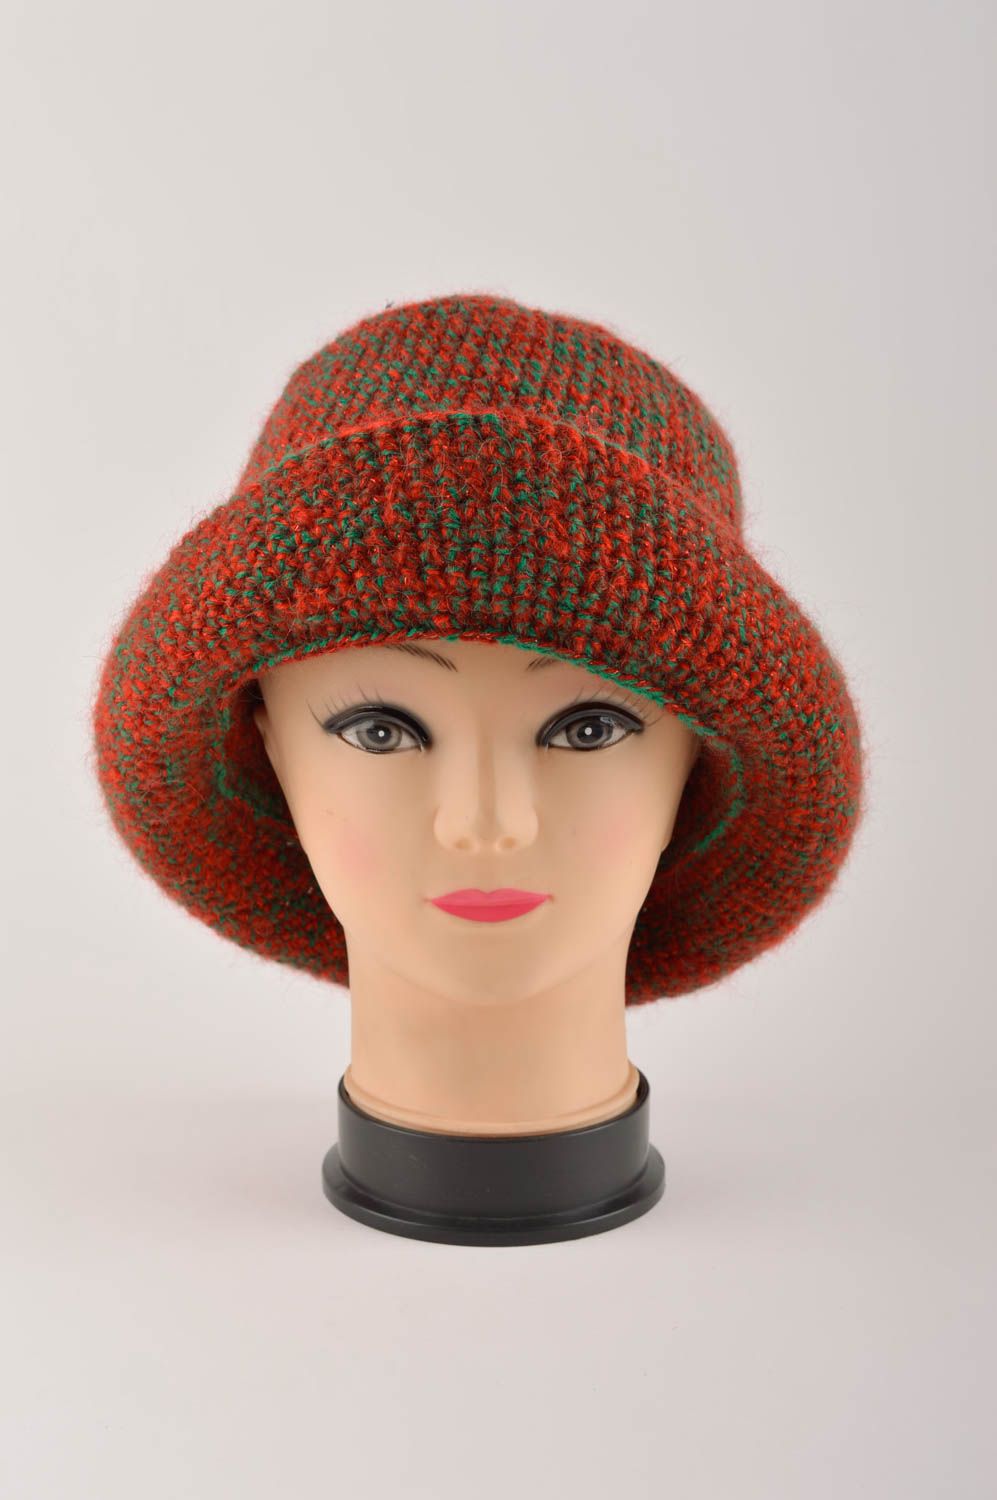 Handmade baby hat knitted baby hat designer headwear unusul hat for girls photo 2